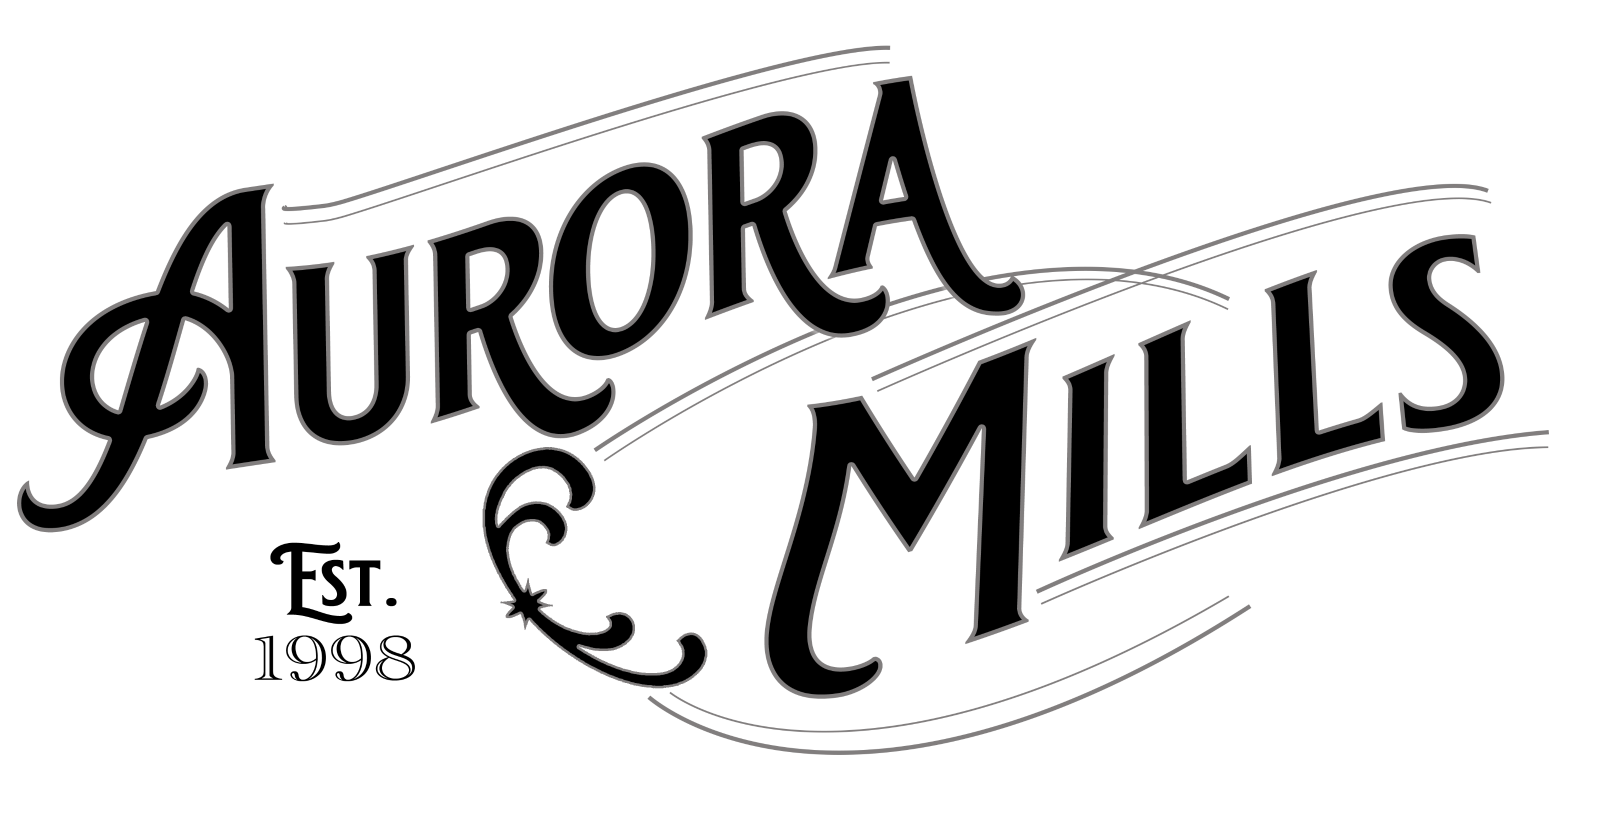 Aurora Mills logo with Victorian style font, reads: "Aurora Mills. EST. 1998"